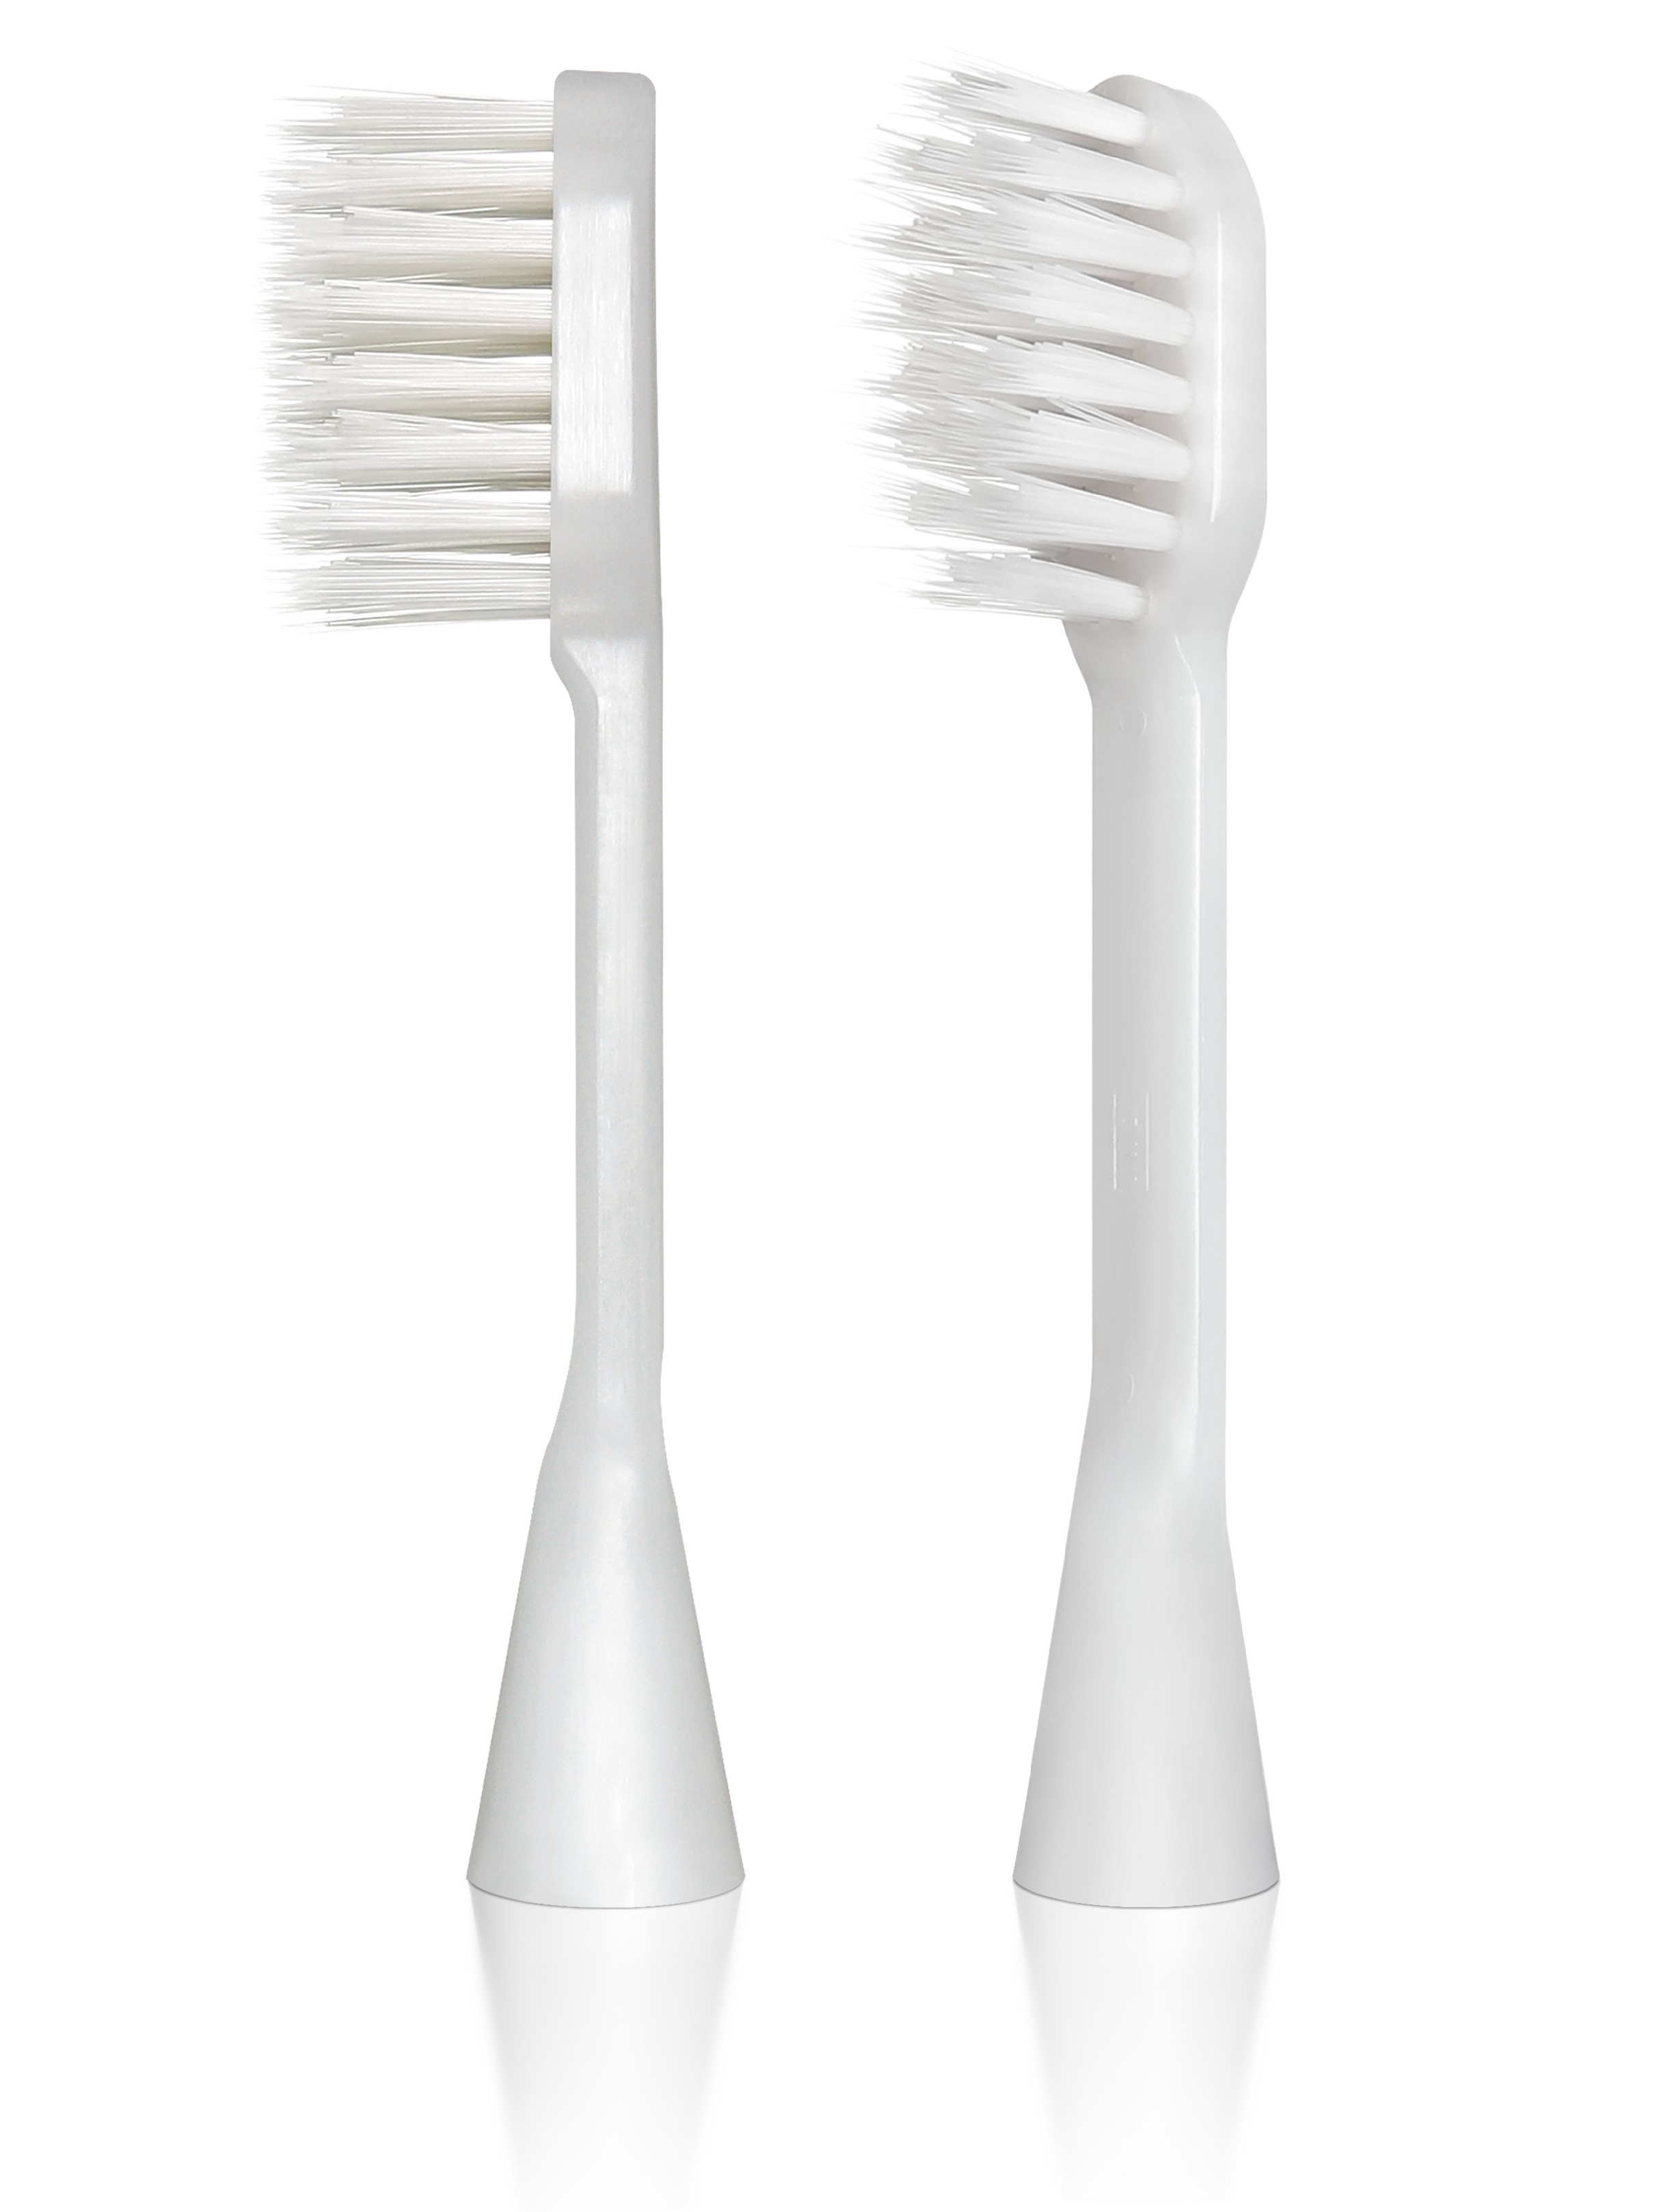 Cменные ионные насадки для электрической зубной щетки Hapica BRT-9 2 шт. сменные насадки для электрической зубной щетки sendo sonibrush m4 4 шт white